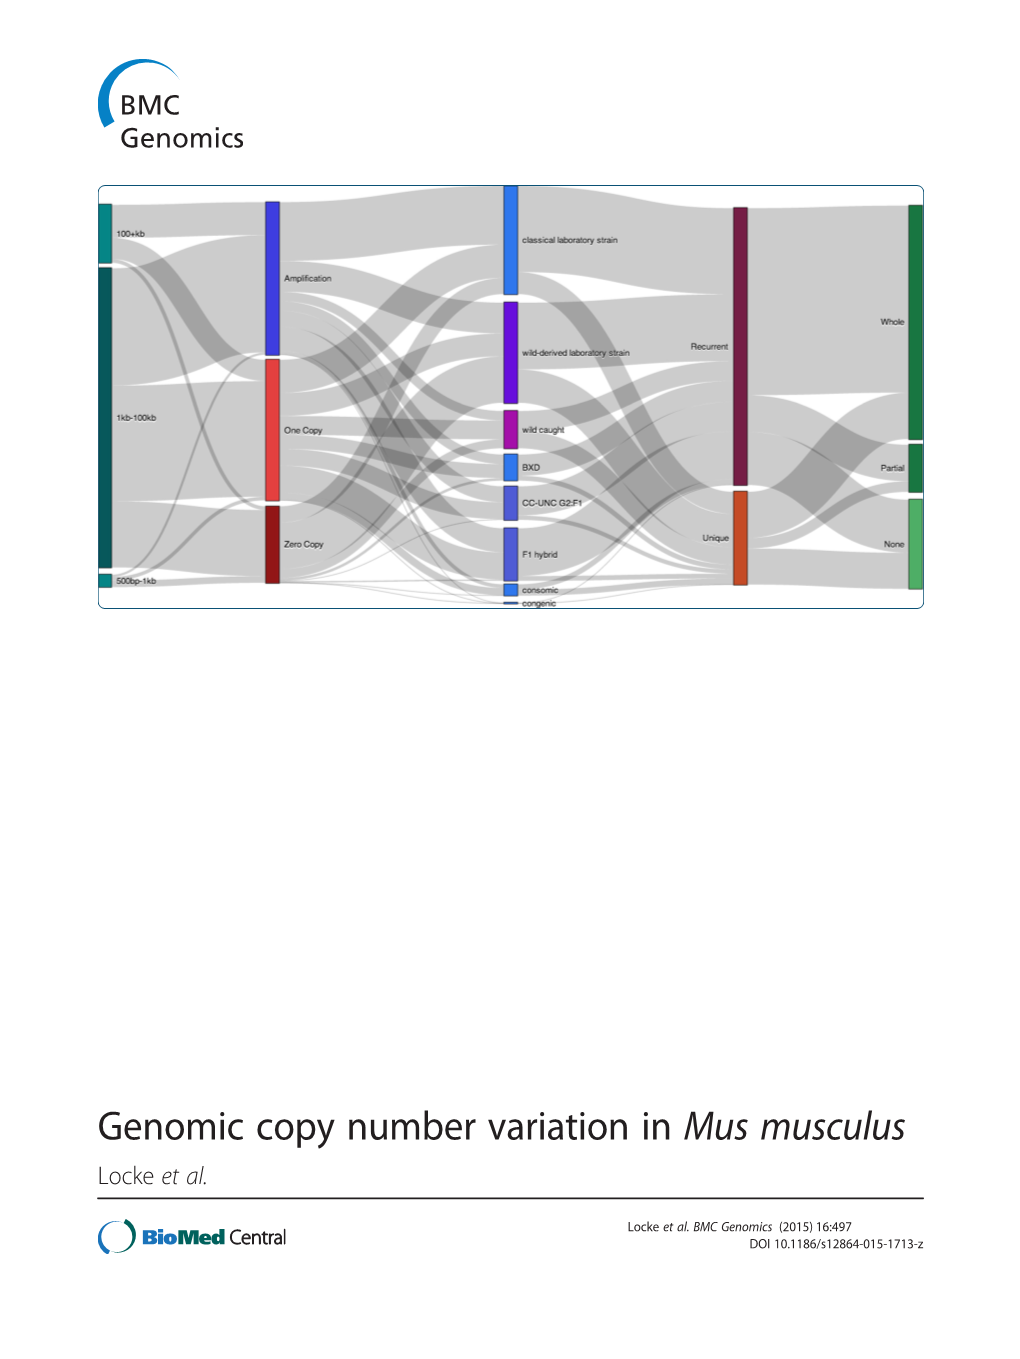 Genomic Copy Number Variation in Mus Musculus Locke Et Al